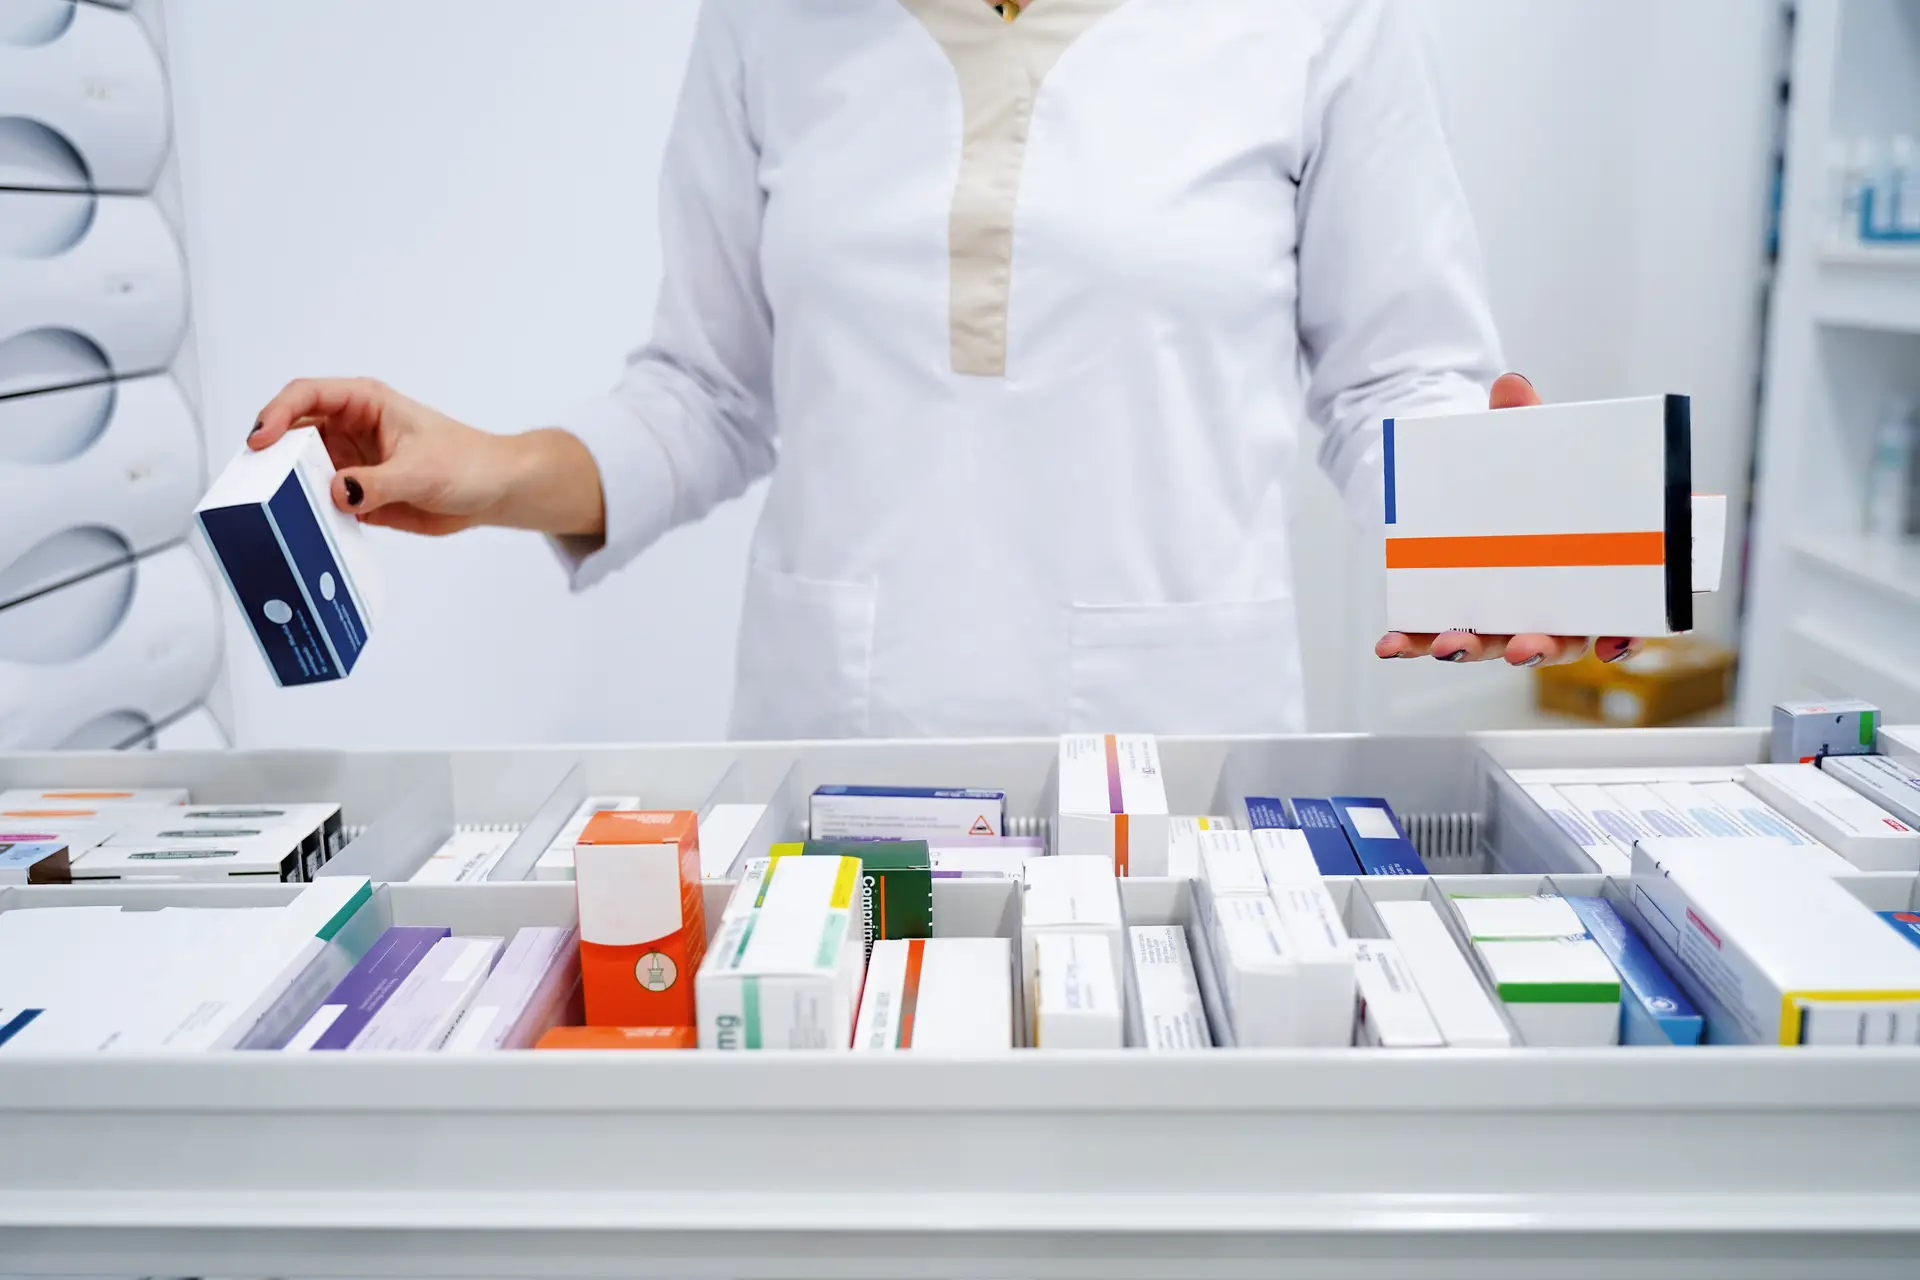 Associação Portuguesa de Medicamentos quer que nos próximos cinco anos,seis em cada 10 utentes optem por comprar medicamentos genéricos